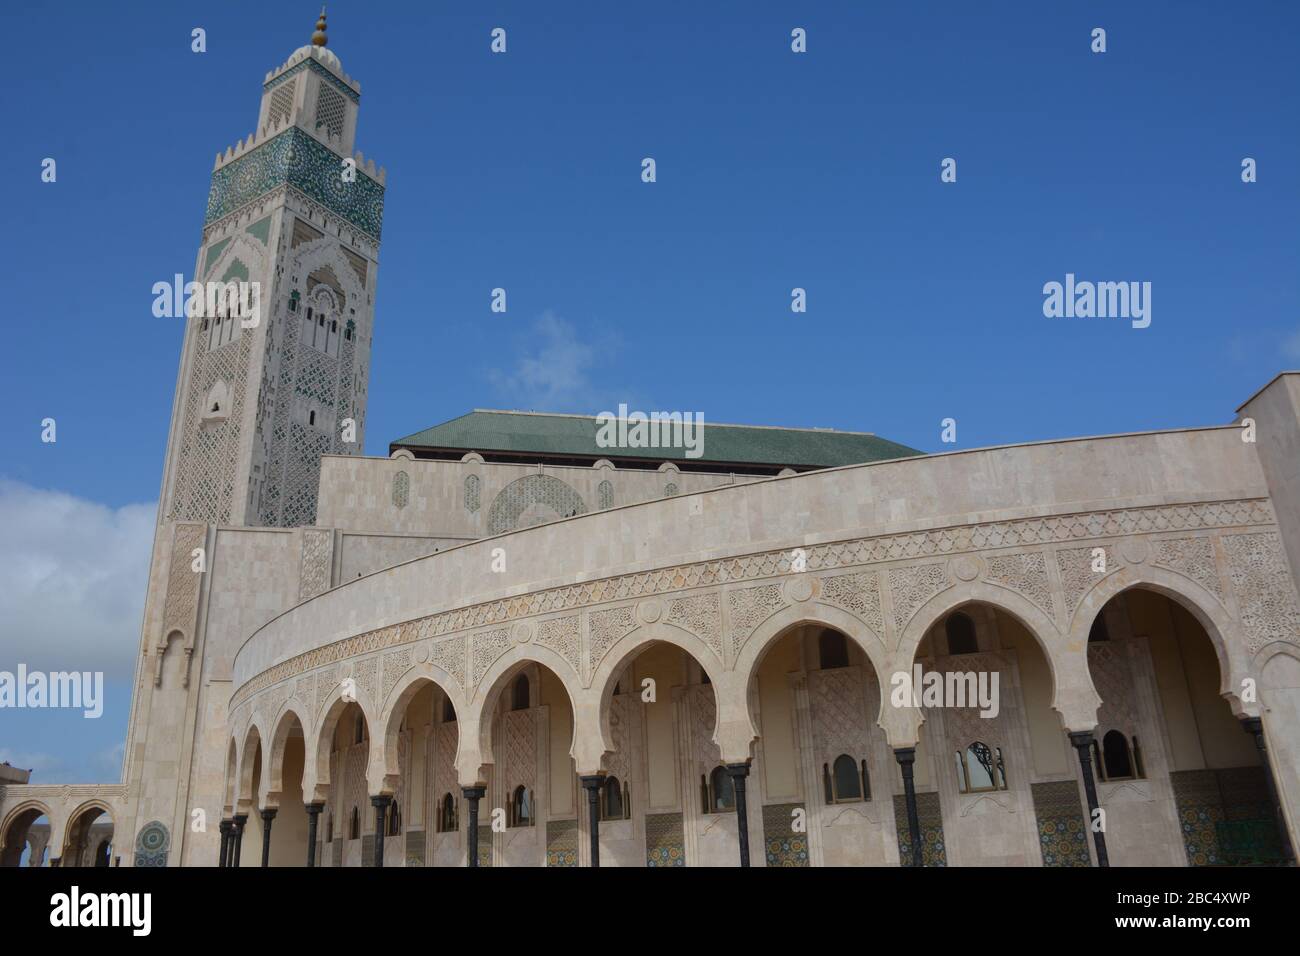 Un espectacular disparo exterior de la Mezquita Hassan II en Casablanca, Marruecos, incluyendo su enorme minarete, el segundo más alto del mundo con 210 metros. Foto de stock